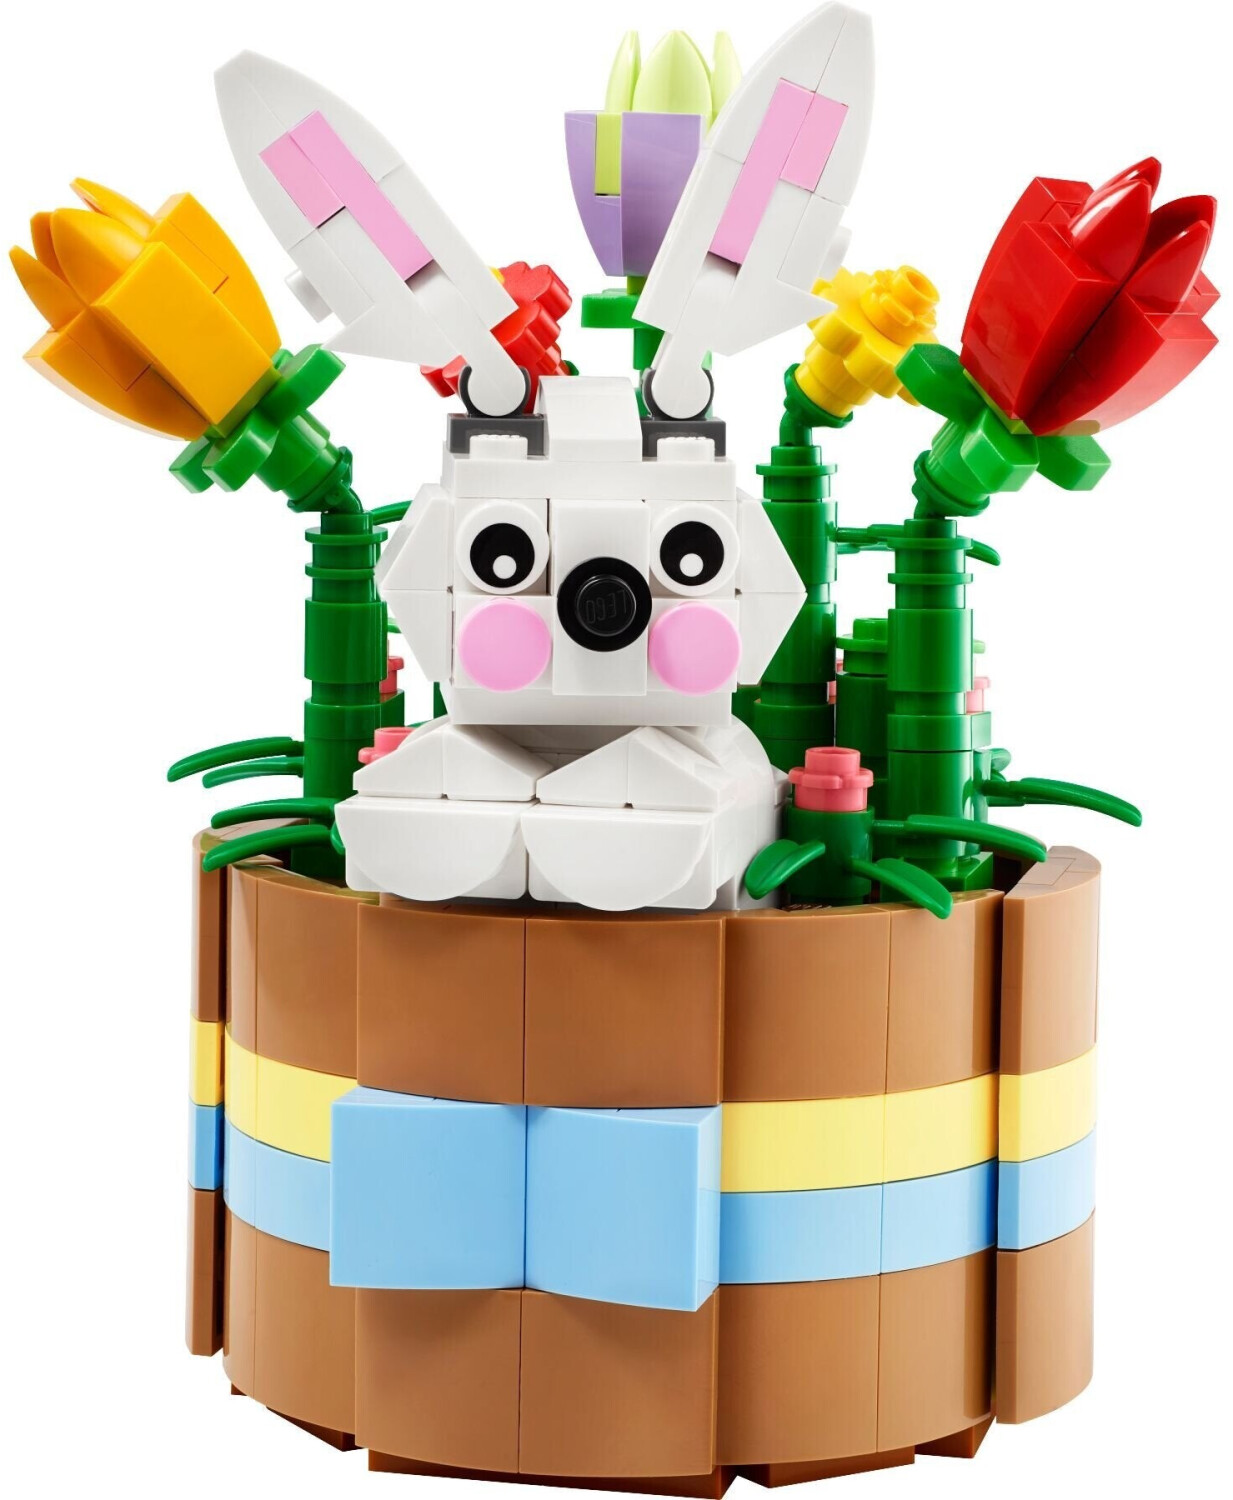 LEGO Friends 42617 pas cher, Le refuge des animaux de la ferme